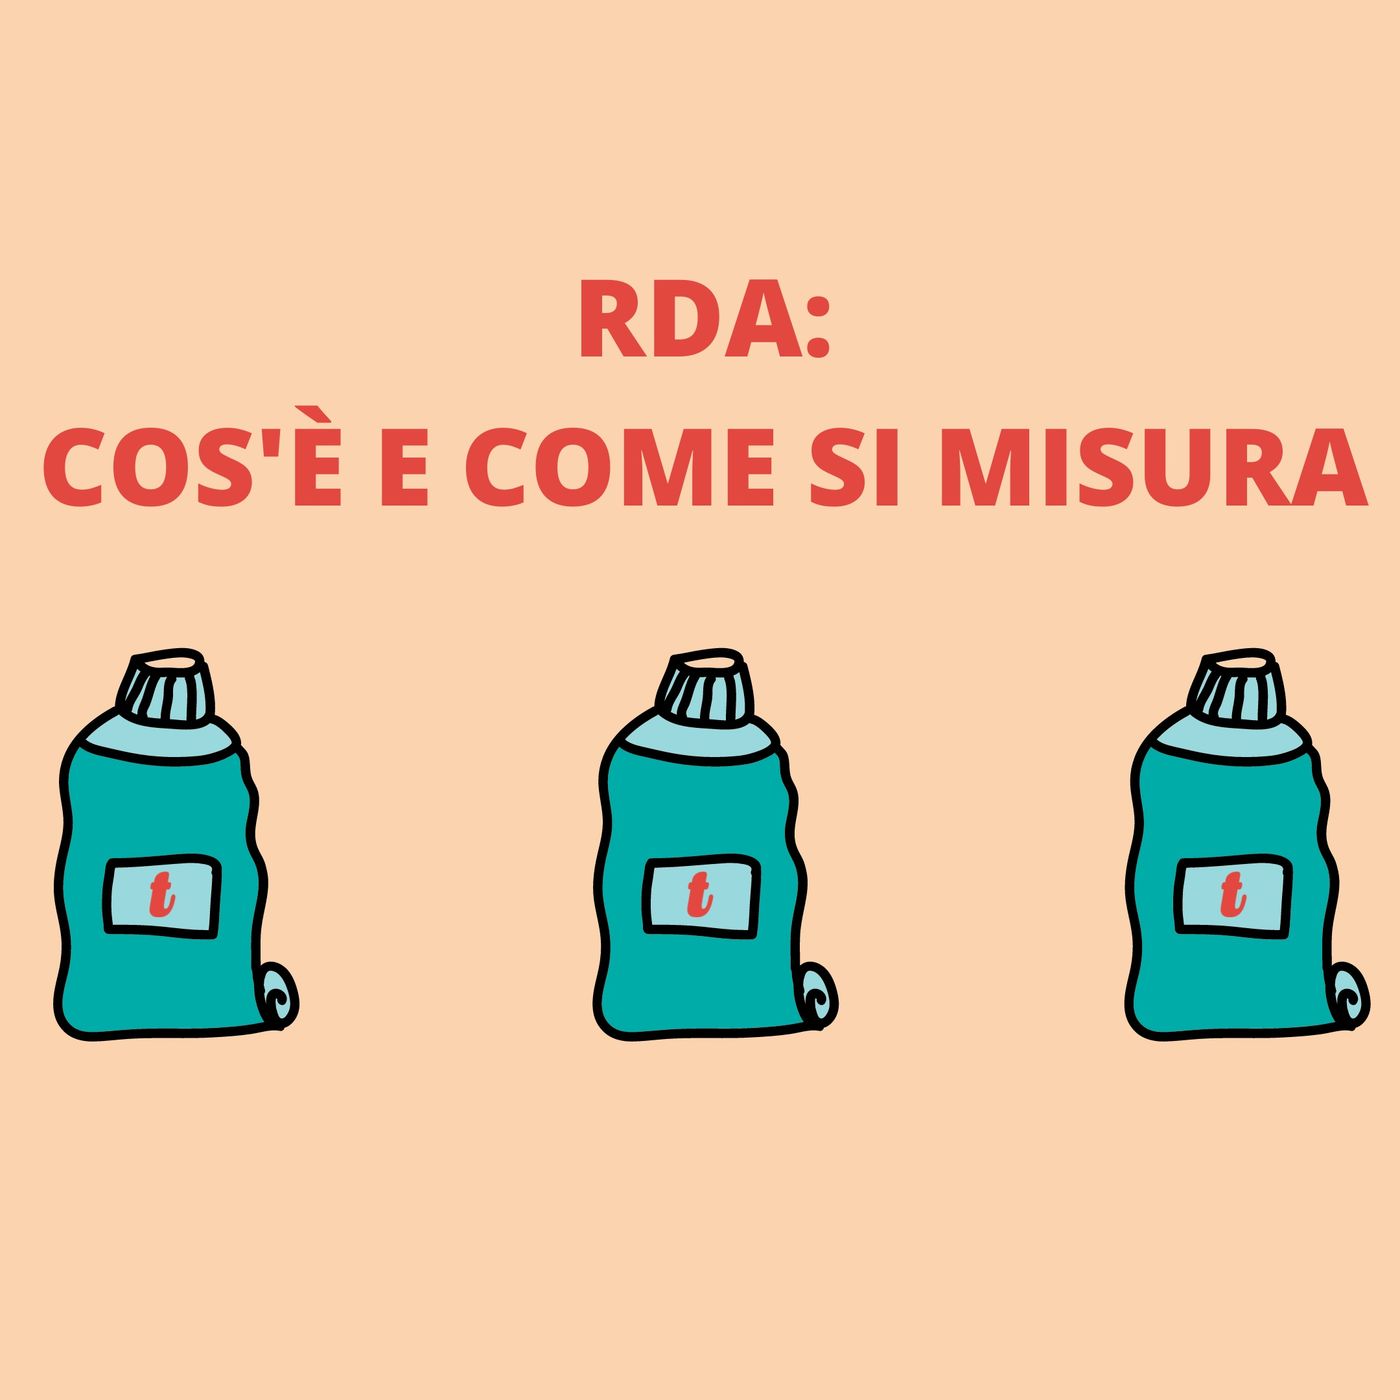 [Aggiornamento] RDA: cos'è e come si misura - Dott.ssa Chiara Lorenzi